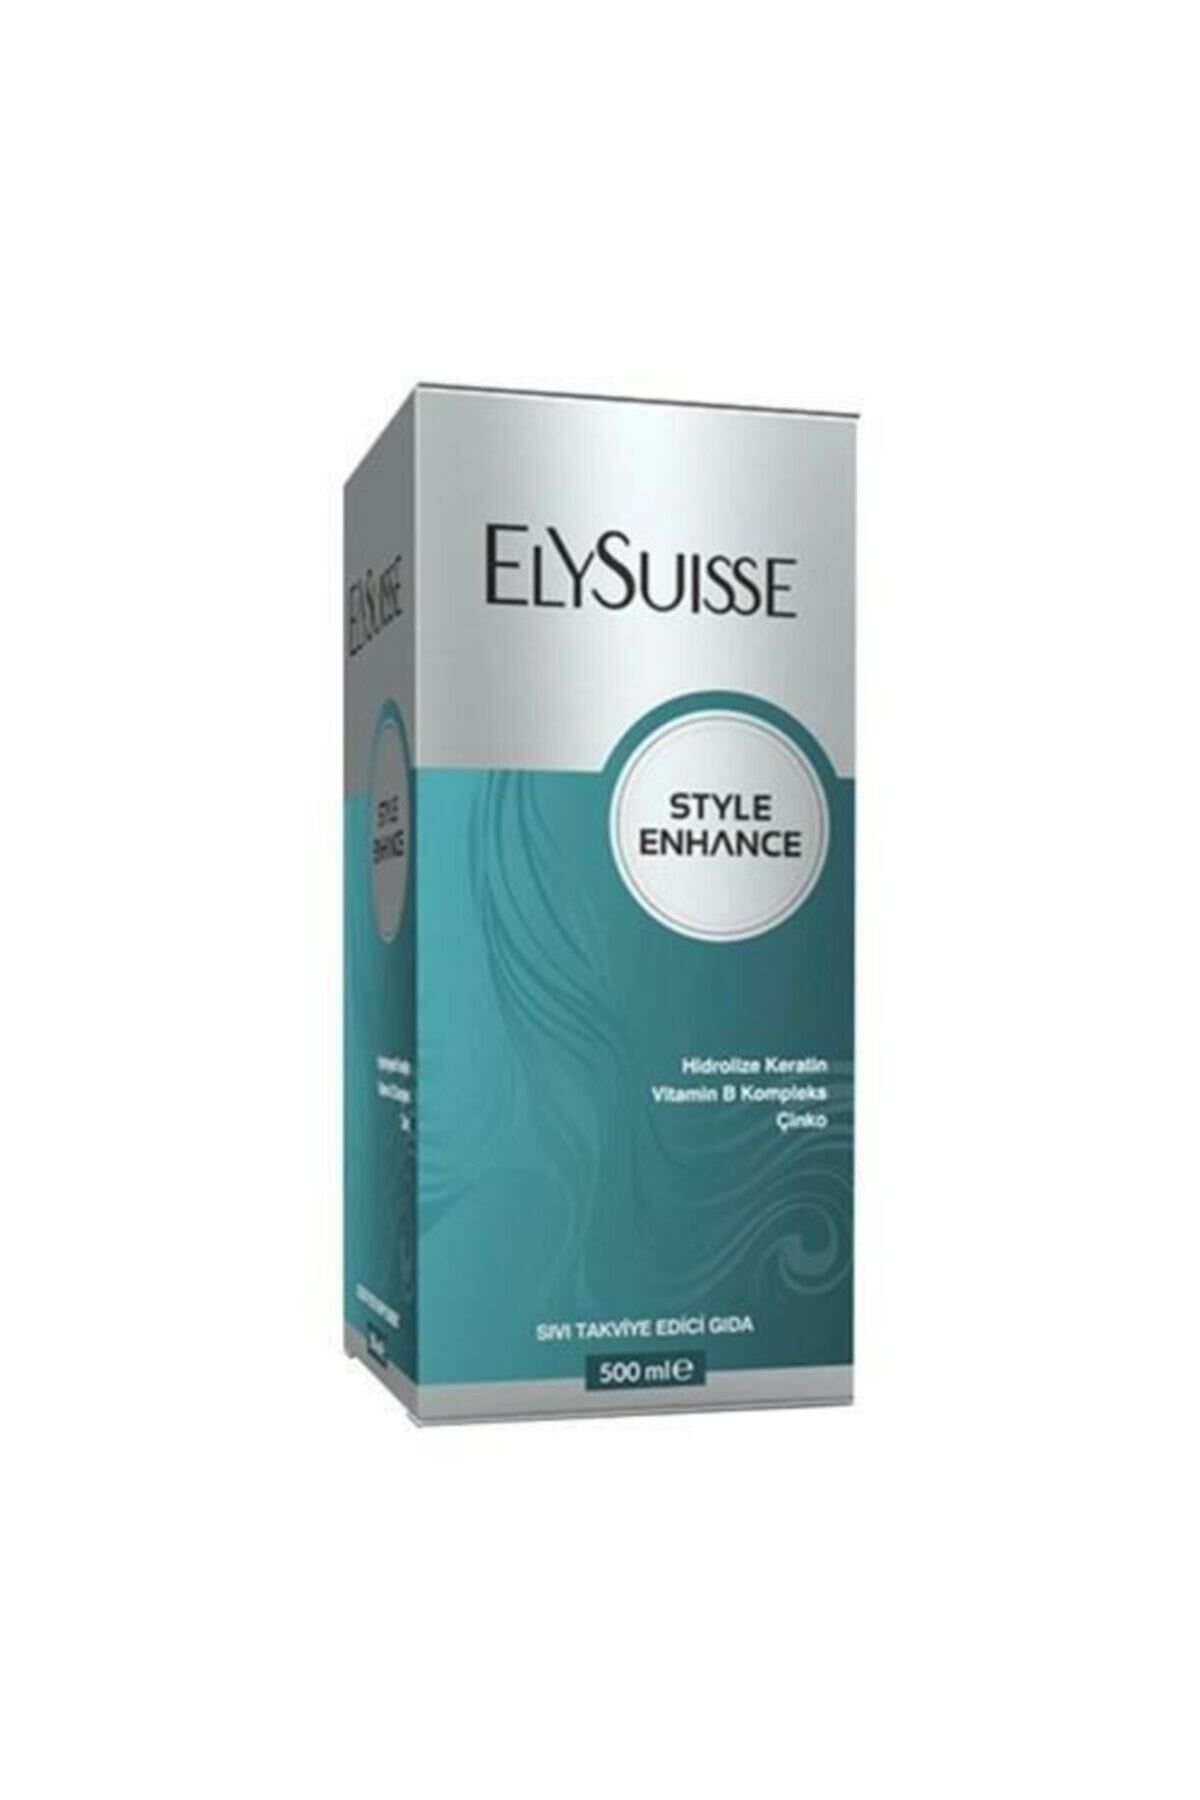 Elysuisse Style Enhance 500 Ml-Takviye Edici Gıda